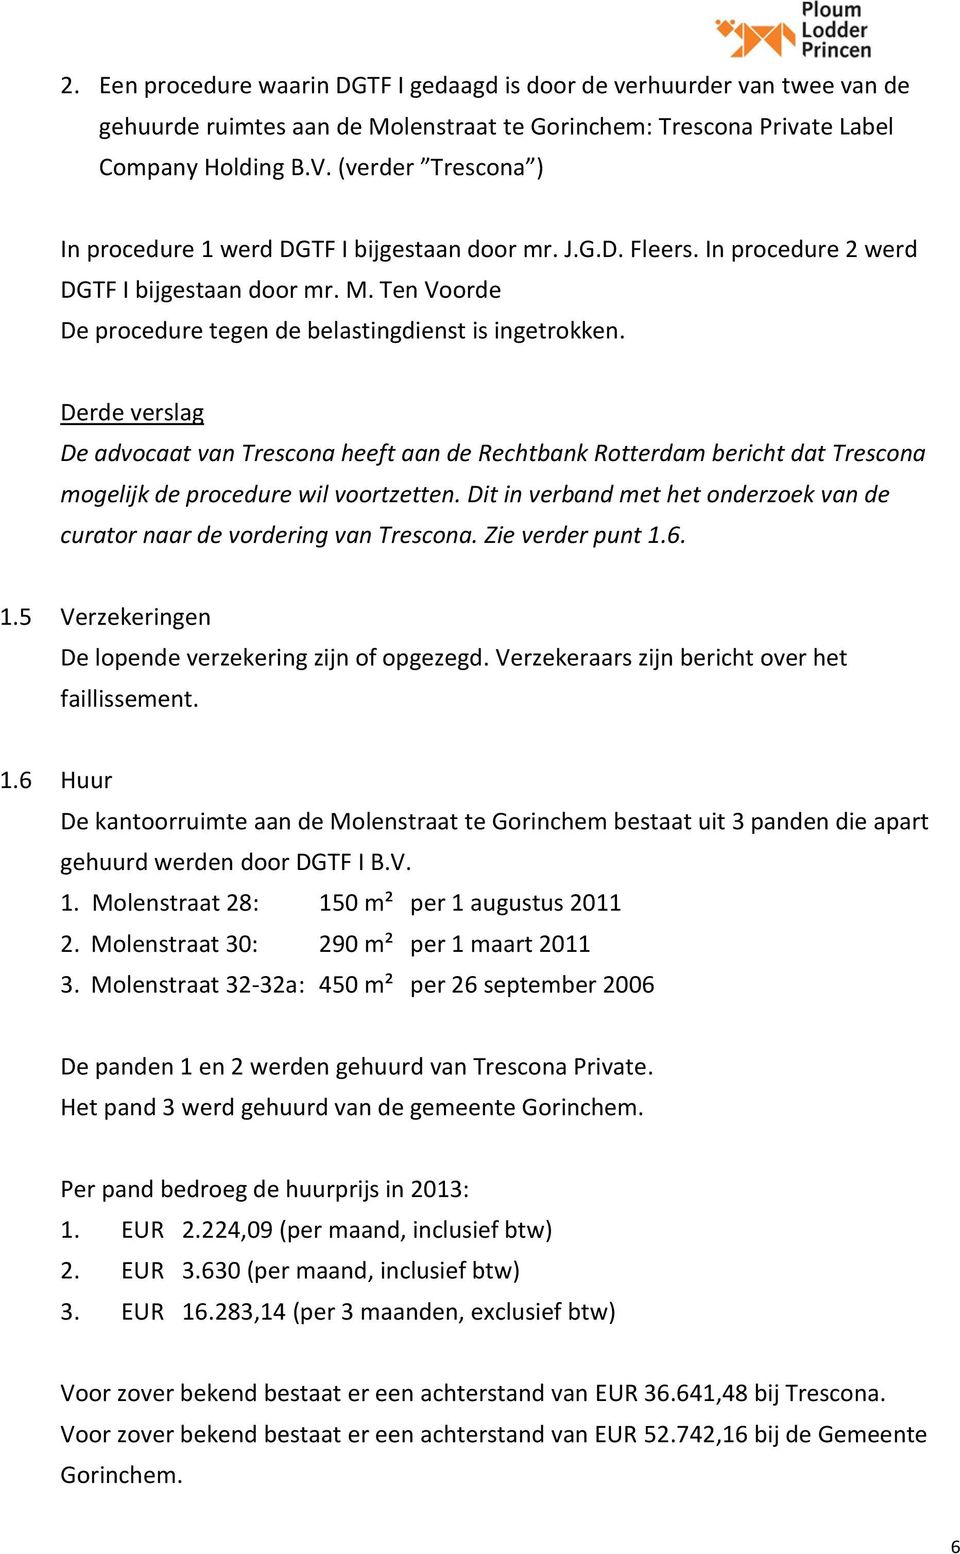 De advocaat van Trescona heeft aan de Rechtbank Rotterdam bericht dat Trescona mogelijk de procedure wil voortzetten. Dit in verband met het onderzoek van de curator naar de vordering van Trescona.